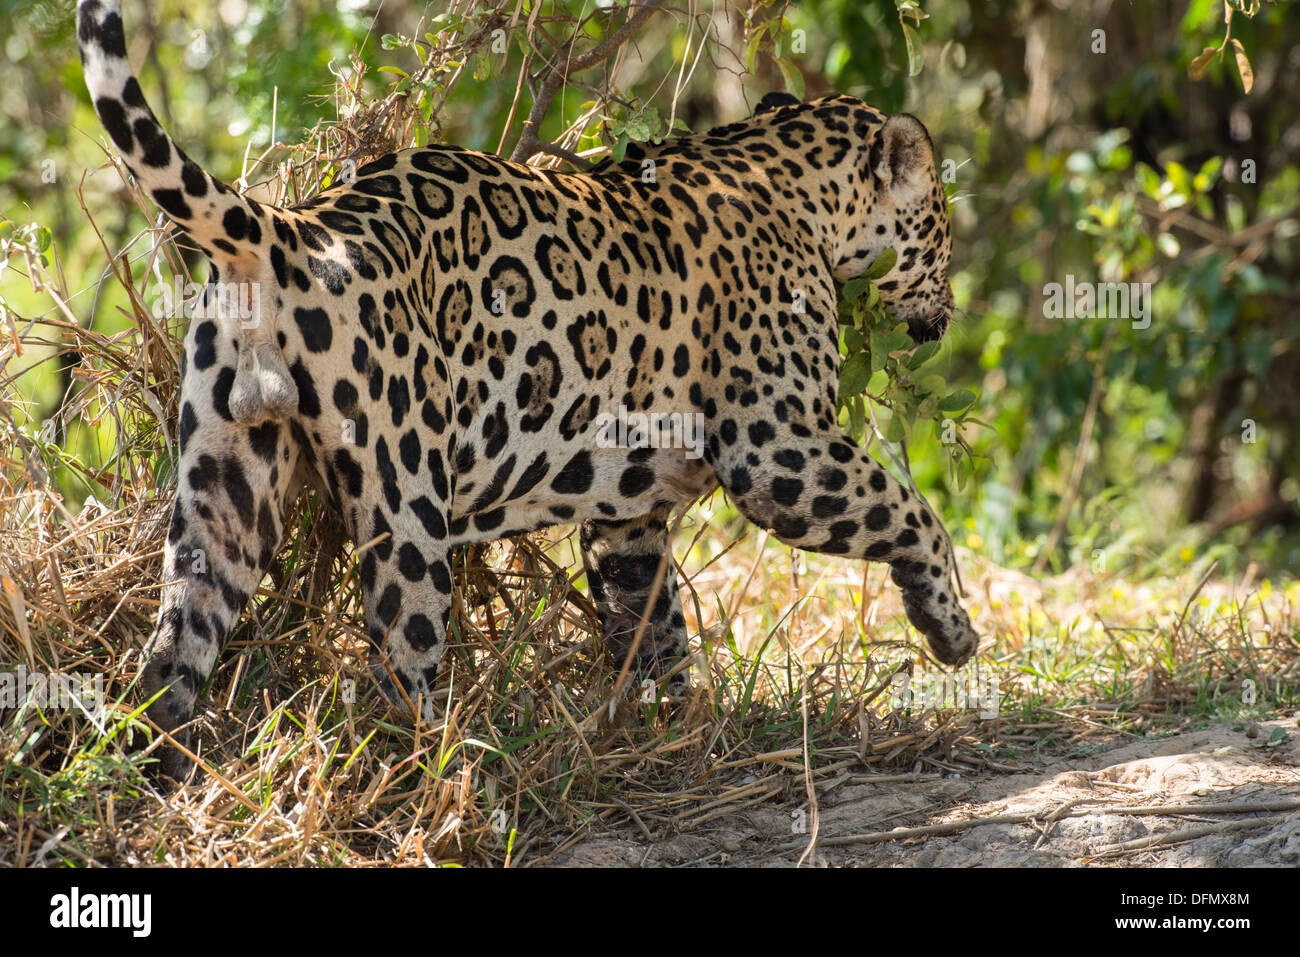 Stock Foto von einem männlichen Jaguar markiert sein Territorium, Pantanal, Brasilien. Stockfoto